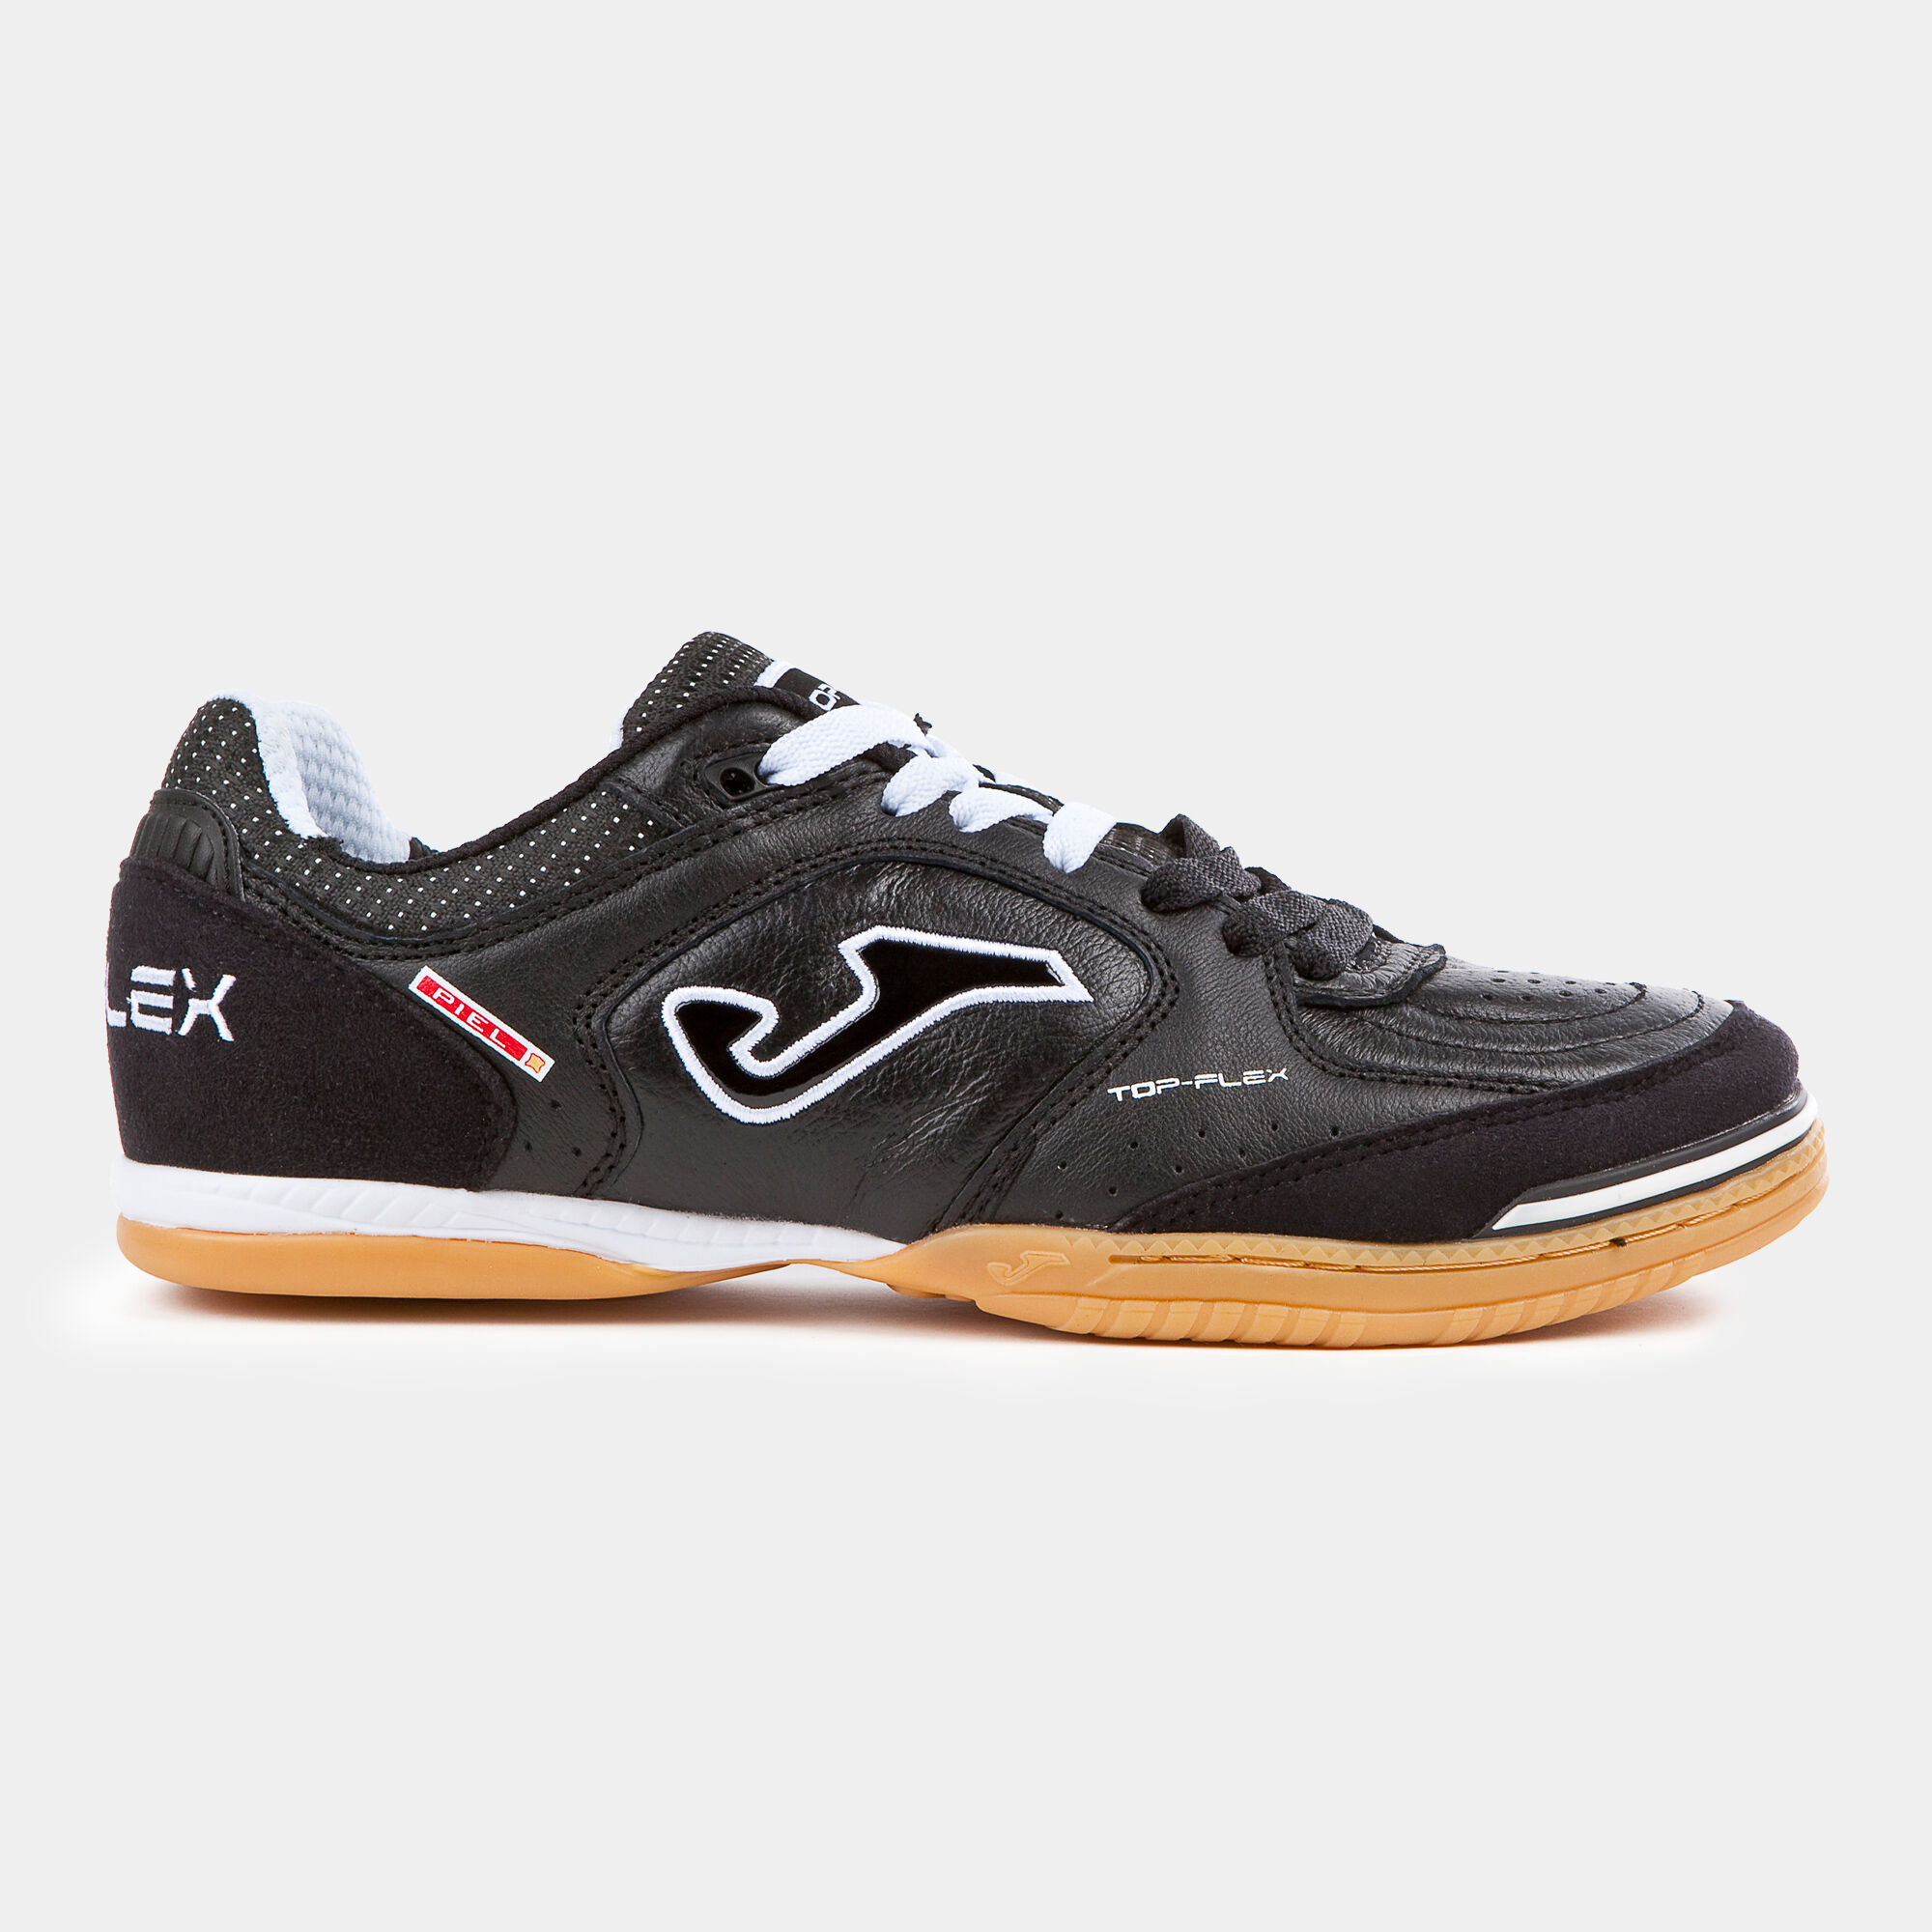 Chaussures futsal Top Flex 21 indoor noir